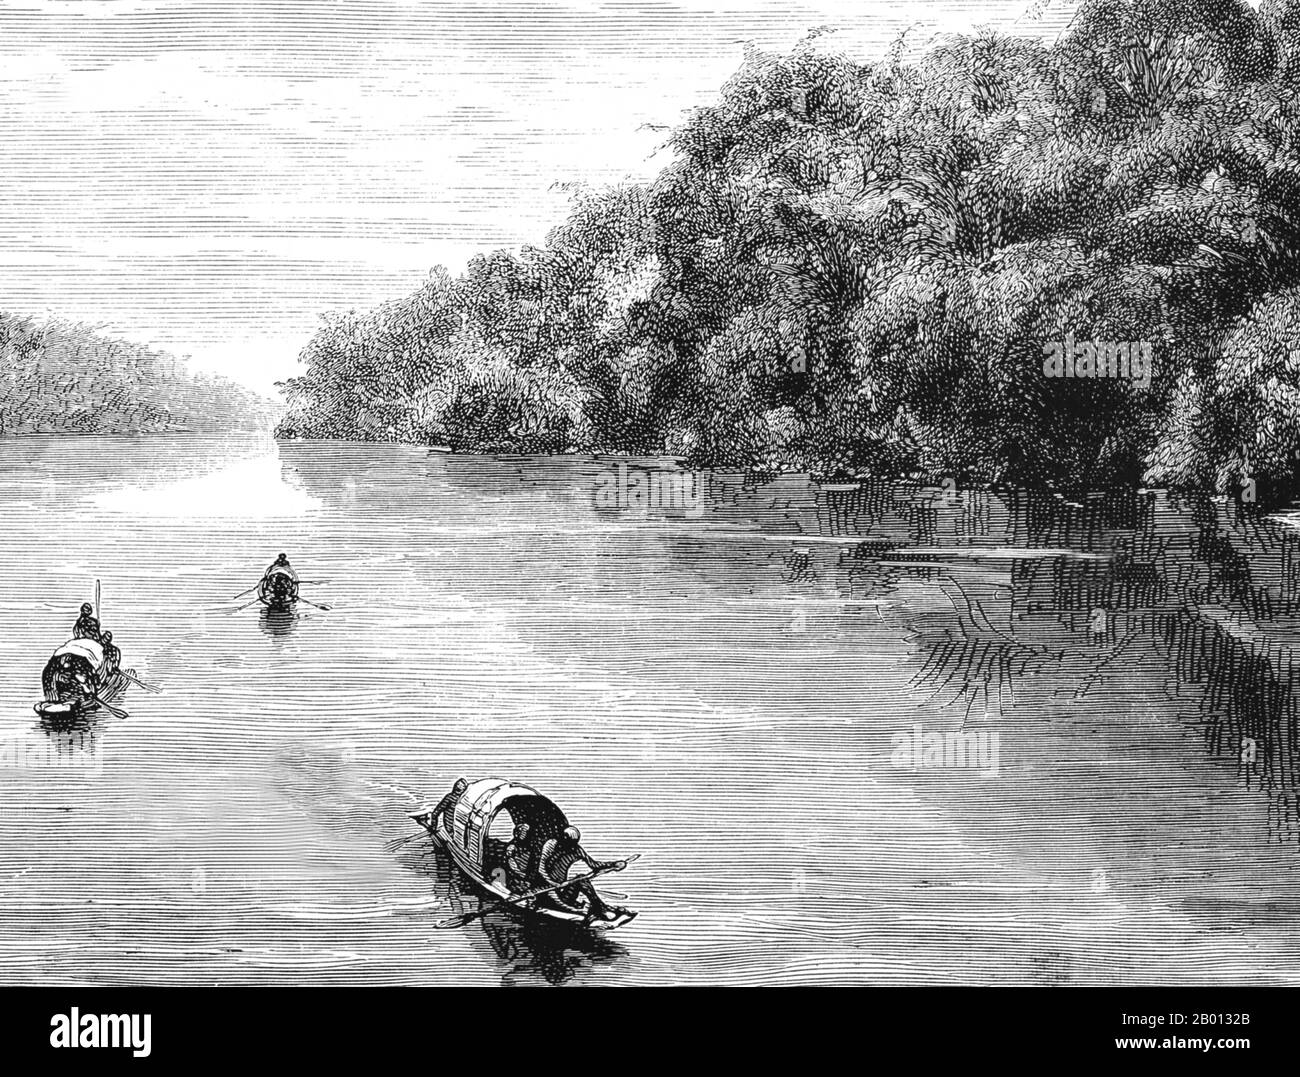 Thaïlande Laos: Une expédition française naviguant sur le Mékong à Bang Hien près de Khemarat, à l'heure actuelle, à la frontière thaï-laotienne. Gravure de Louis Delaporte (1842-1925), 1867. Le Mékong est le 12e fleuve le plus long du monde. De sa source himalayenne sur le plateau tibétain, il coule environ 4,350 km (2,703 miles) à travers la province chinoise du Yunnan, la Birmanie, le Laos, la Thaïlande, le Cambodge et le Vietnam, Enfin drainer dans la mer de Chine du Sud. La construction récente de barrages hydroélectriques sur la rivière et ses affluents a réduit considérablement le débit d'eau pendant la saison sèche en Asie du Sud-est. Banque D'Images